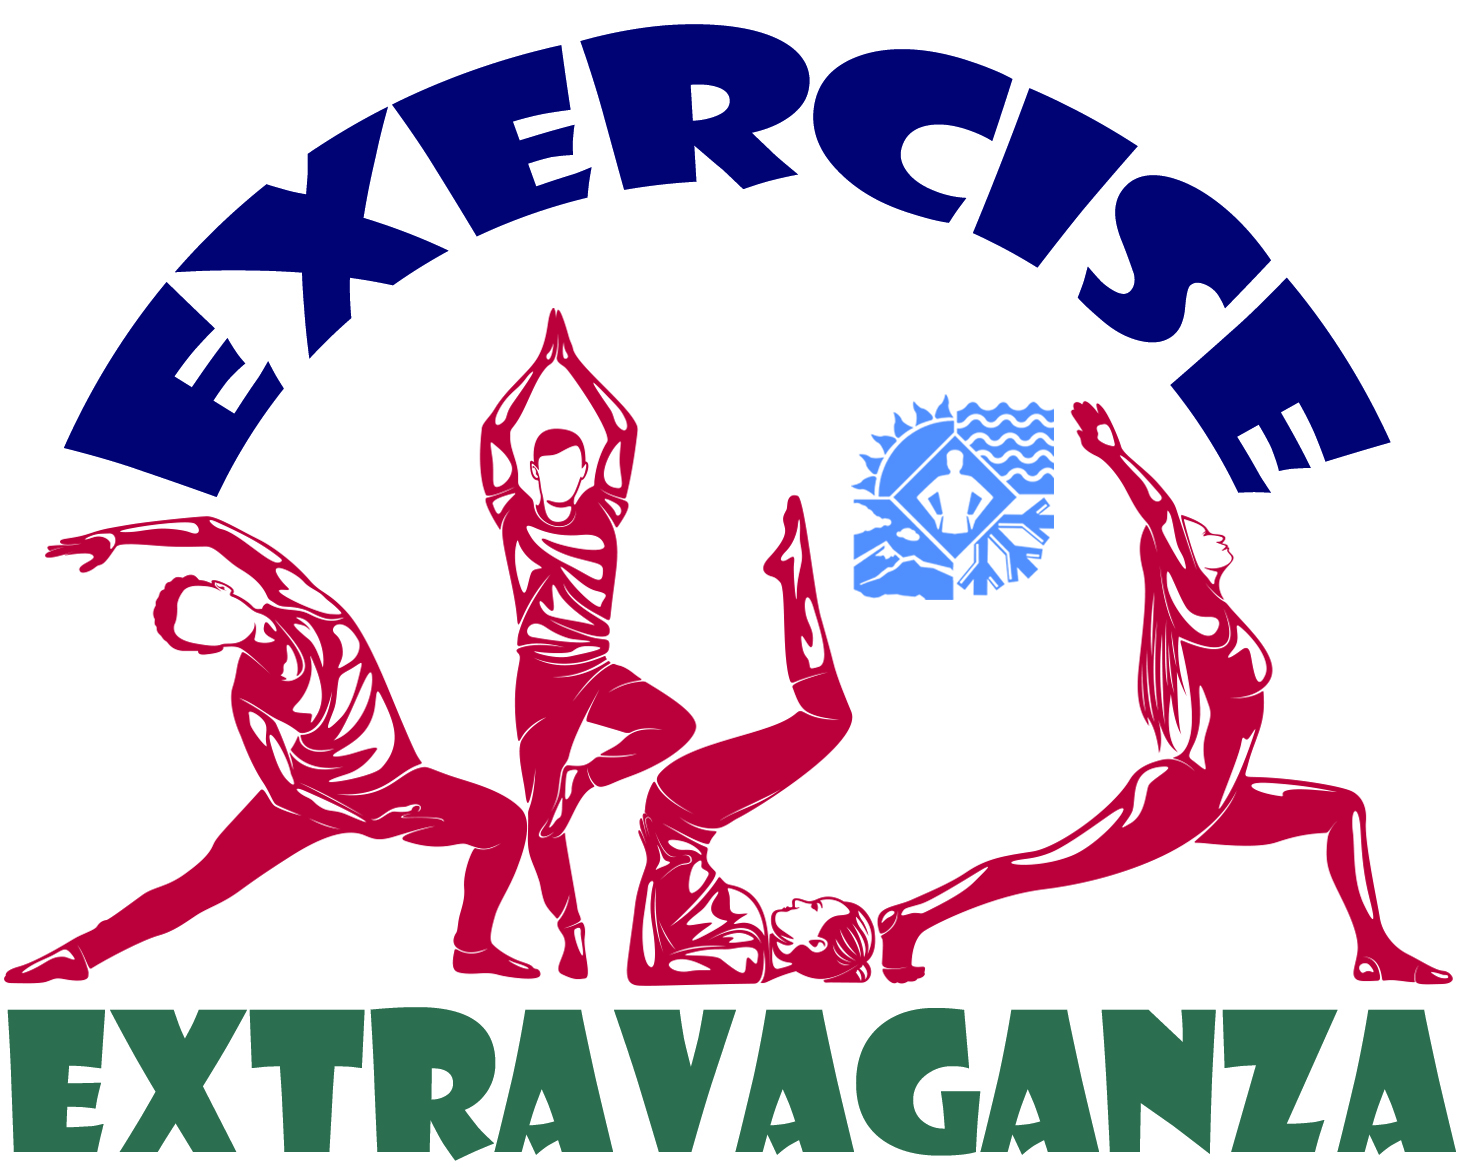 Exercise Extravaganza